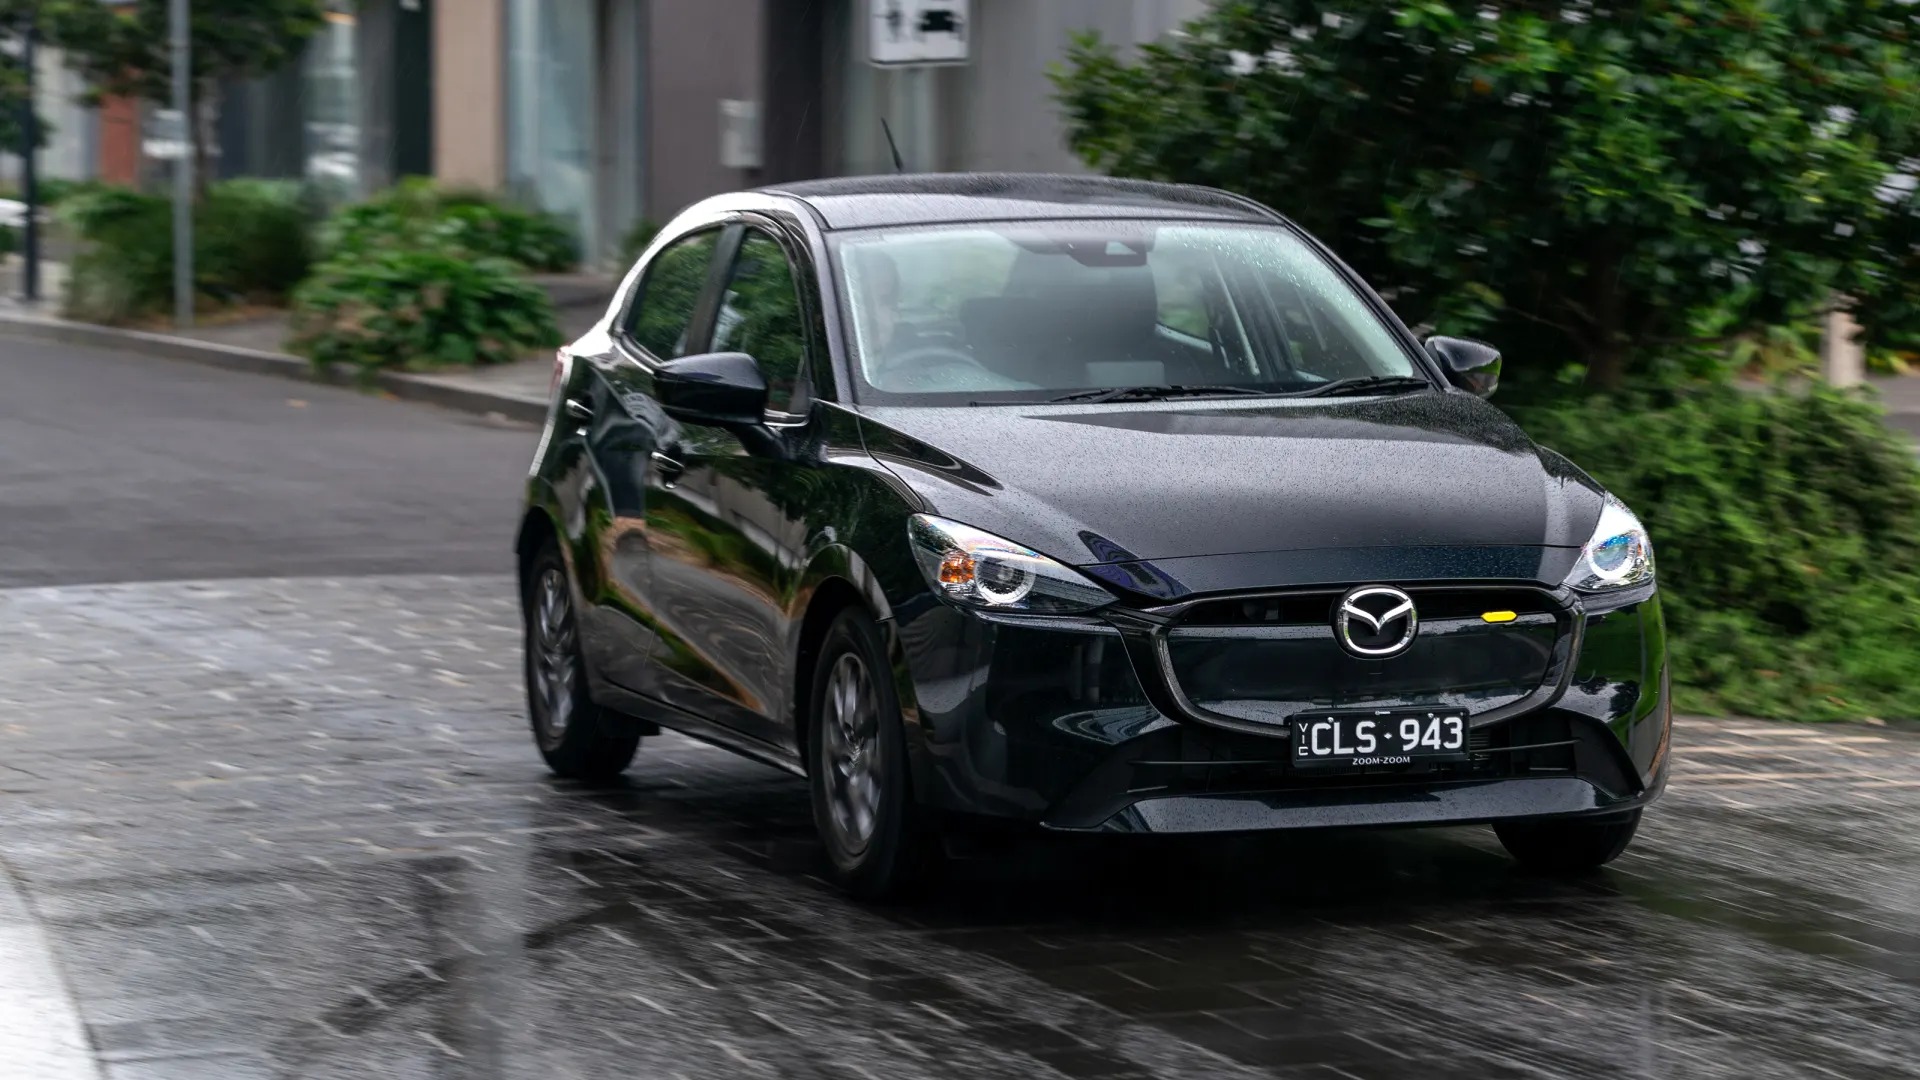 Mazda2 thế hệ mới: Thay khung gầm, dễ có động cơ hybrid